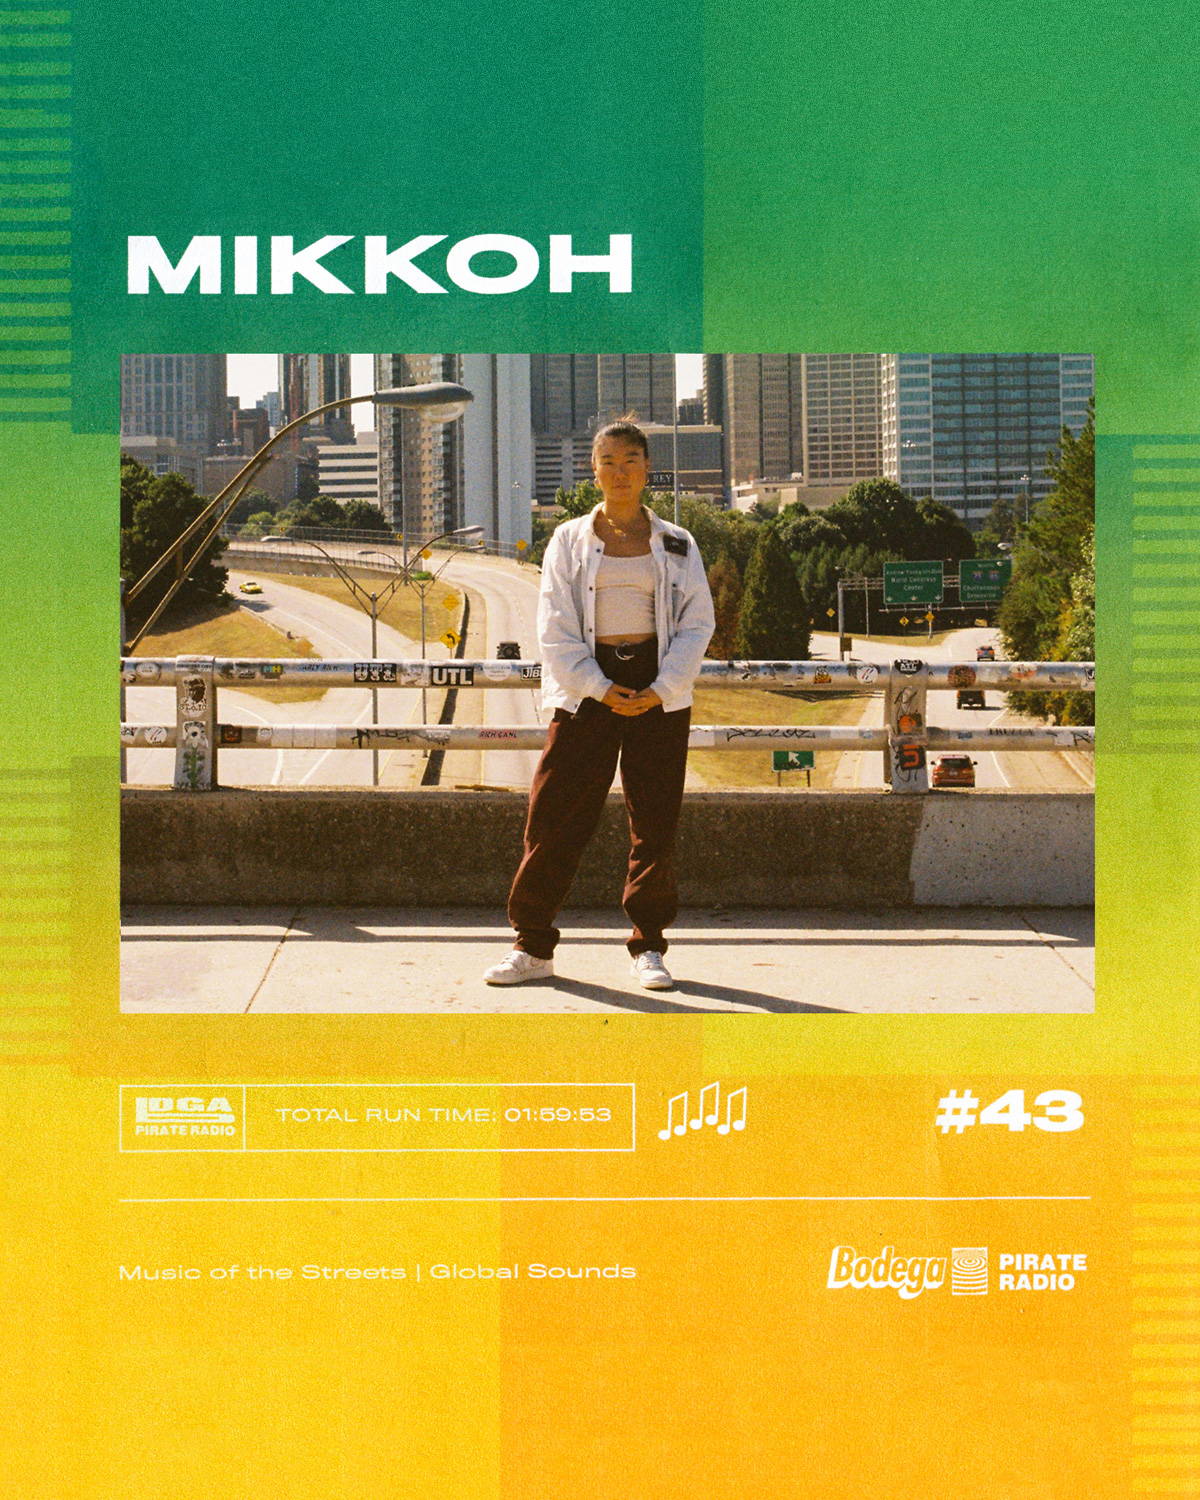 EPISODE #43: LIVE SET W/ MIKKOH + Q&A